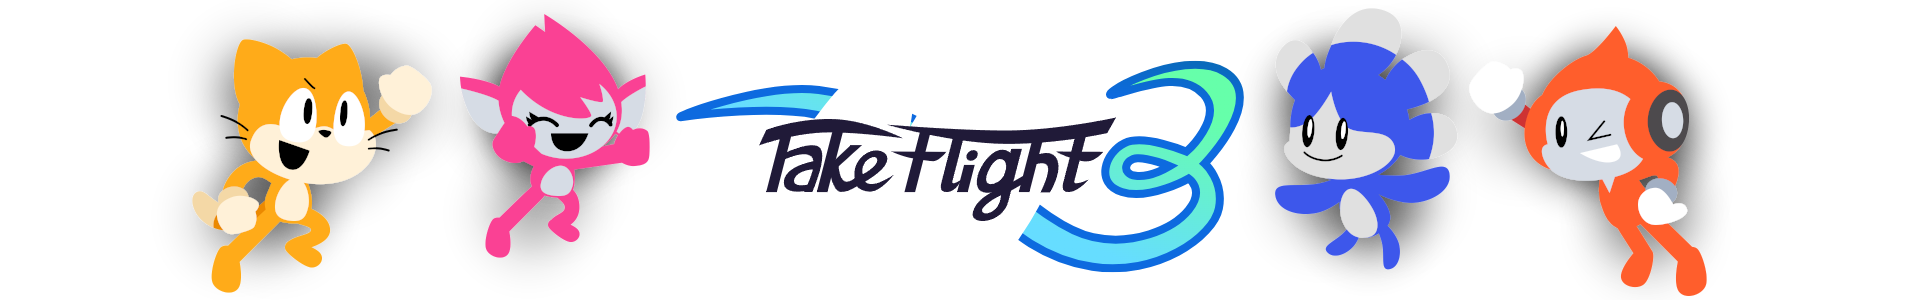 Take Flight 3